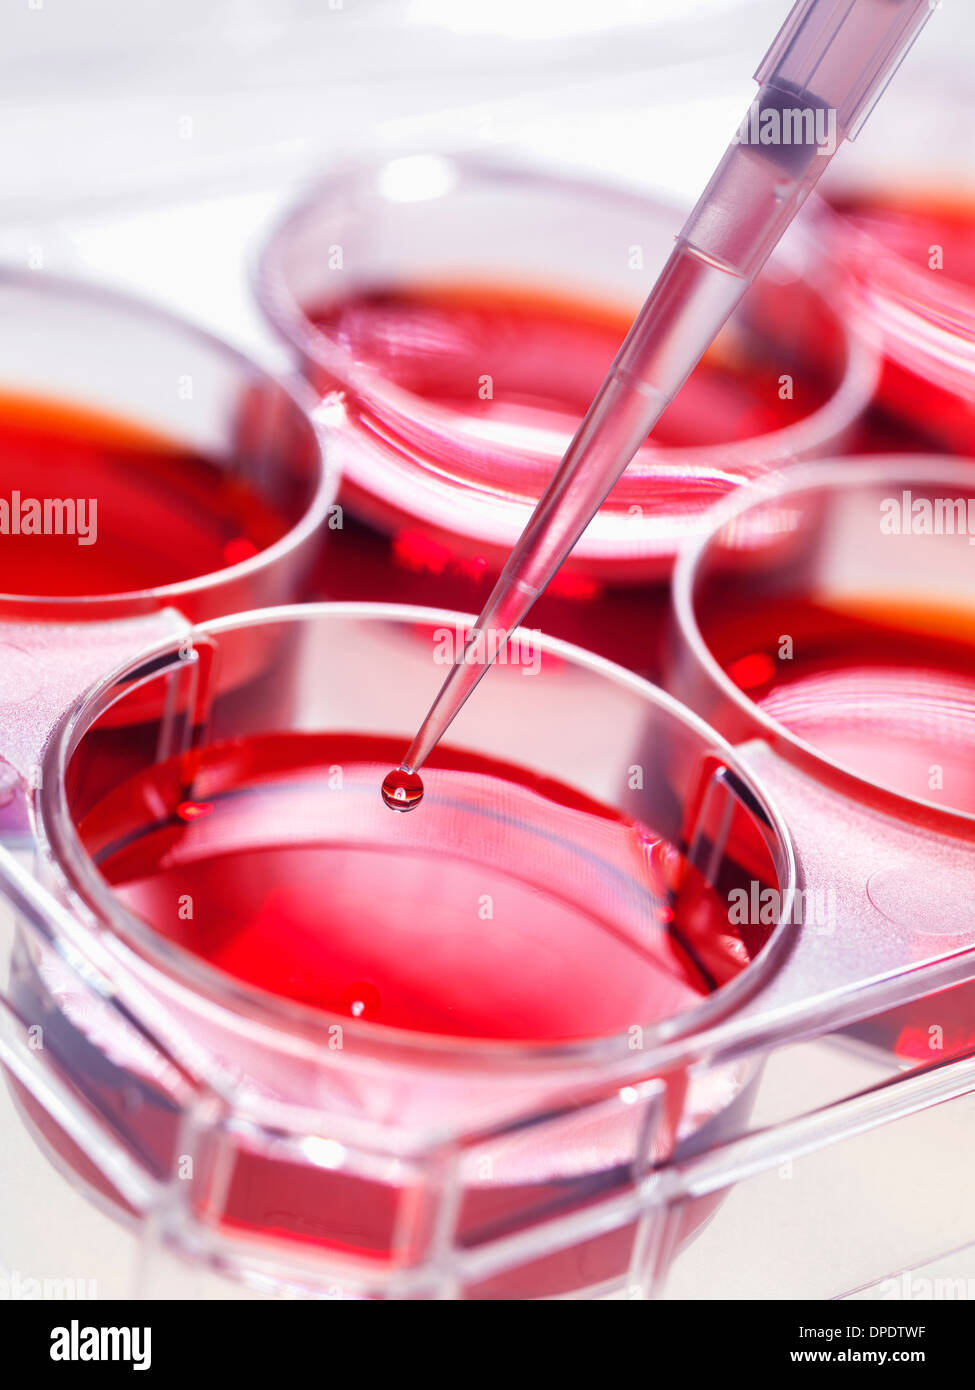 Ajouter à la pipette d'échantillonnage cultures de cellules souches dans des pots de plus en plus utilisé, d'implanter des cellules souches pour réparer des tissus endommagés Banque D'Images